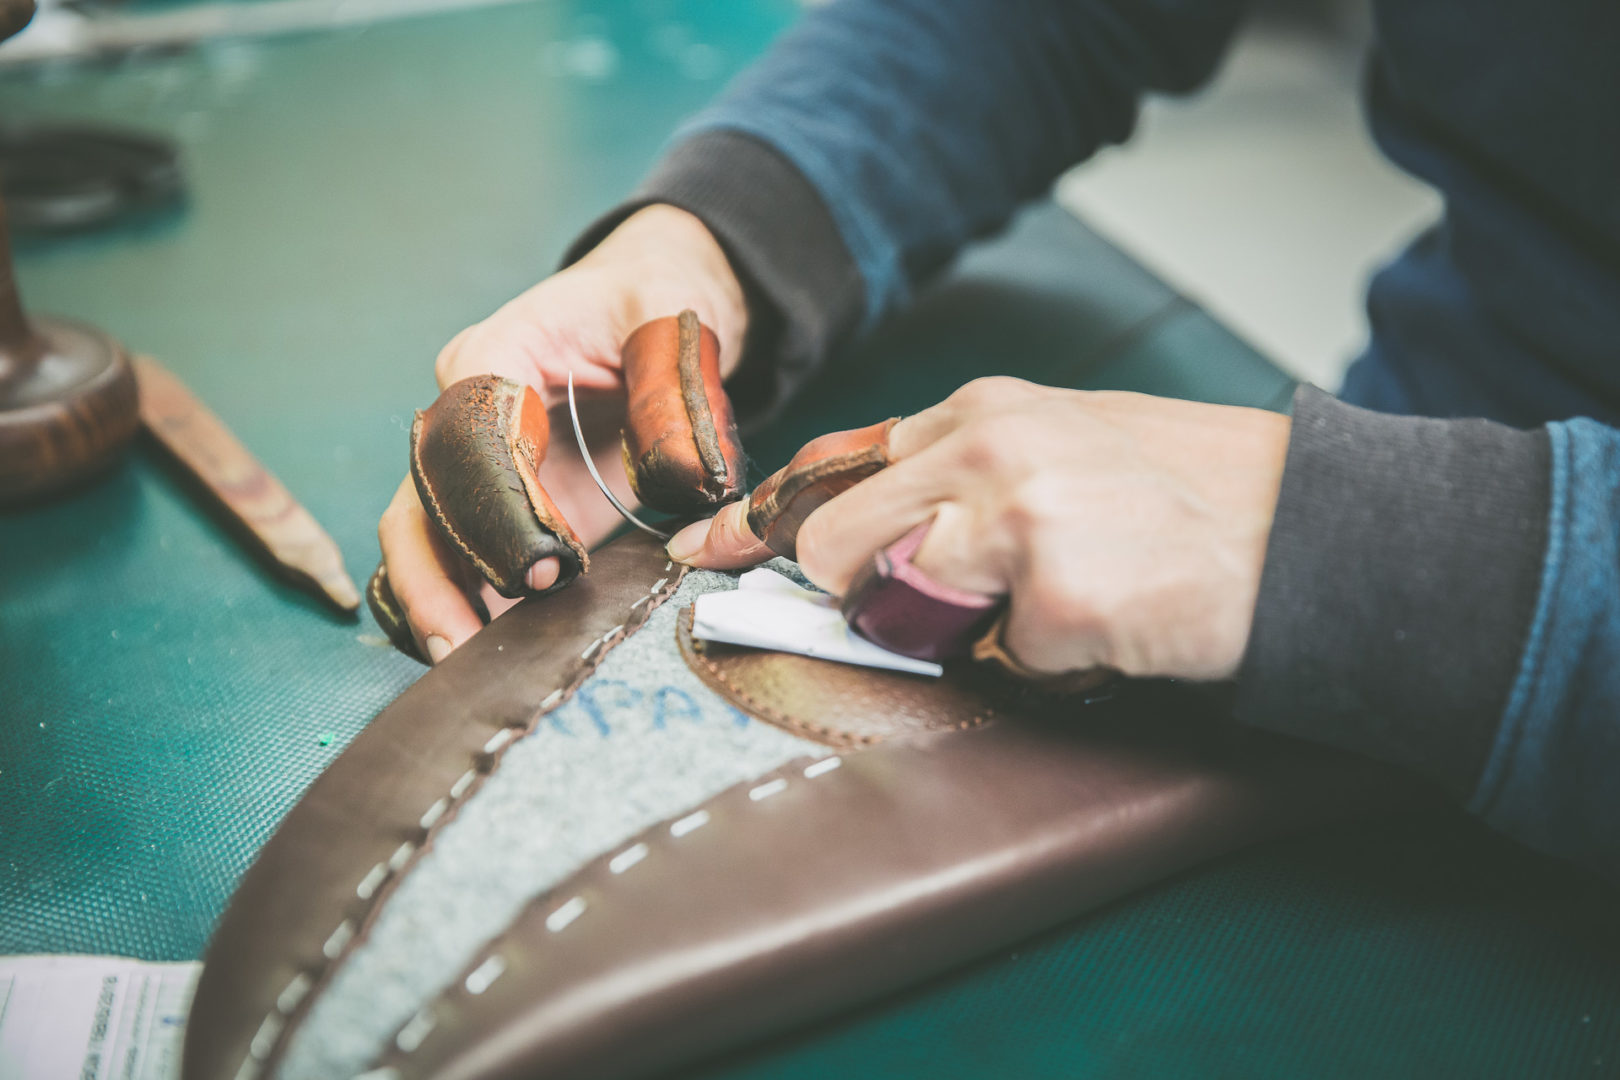 Sellier atelier workshop Childéric selle sur-mesure cuir leather saddle artisanat made in France fait en France panneau